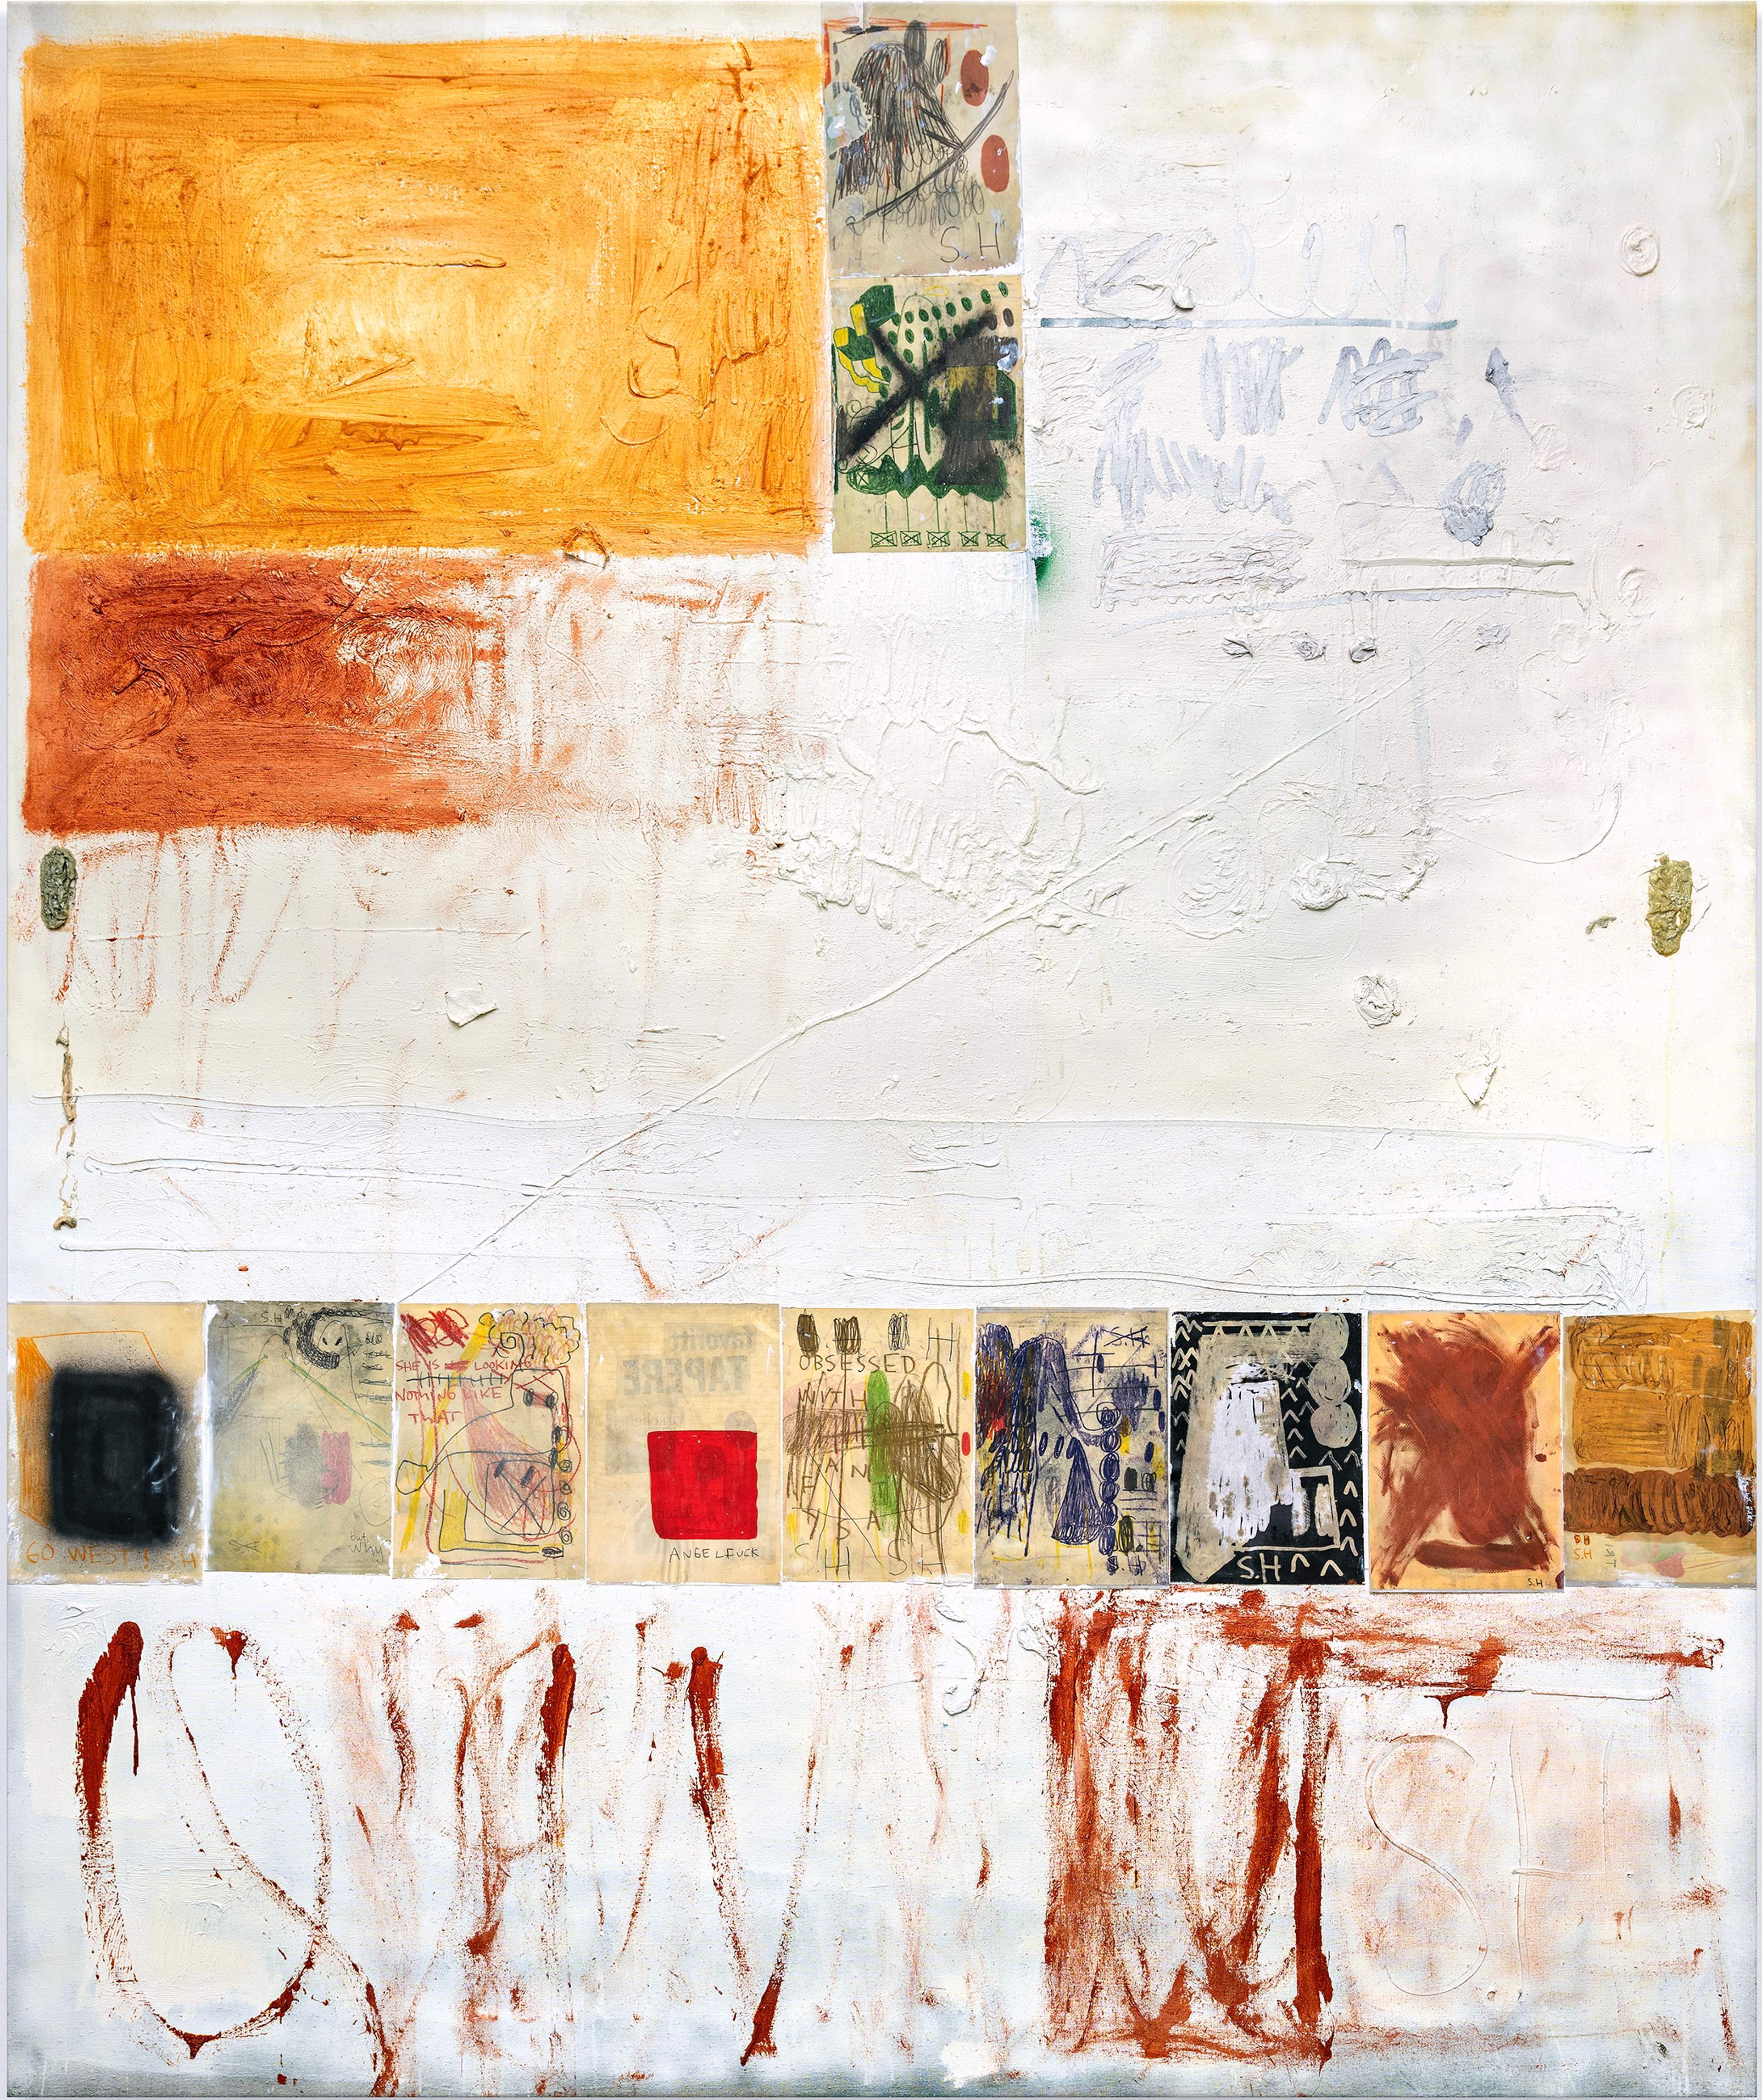 Sebastian Helling, Obsessed, 2020, oil paint on linen, 220x185 cm